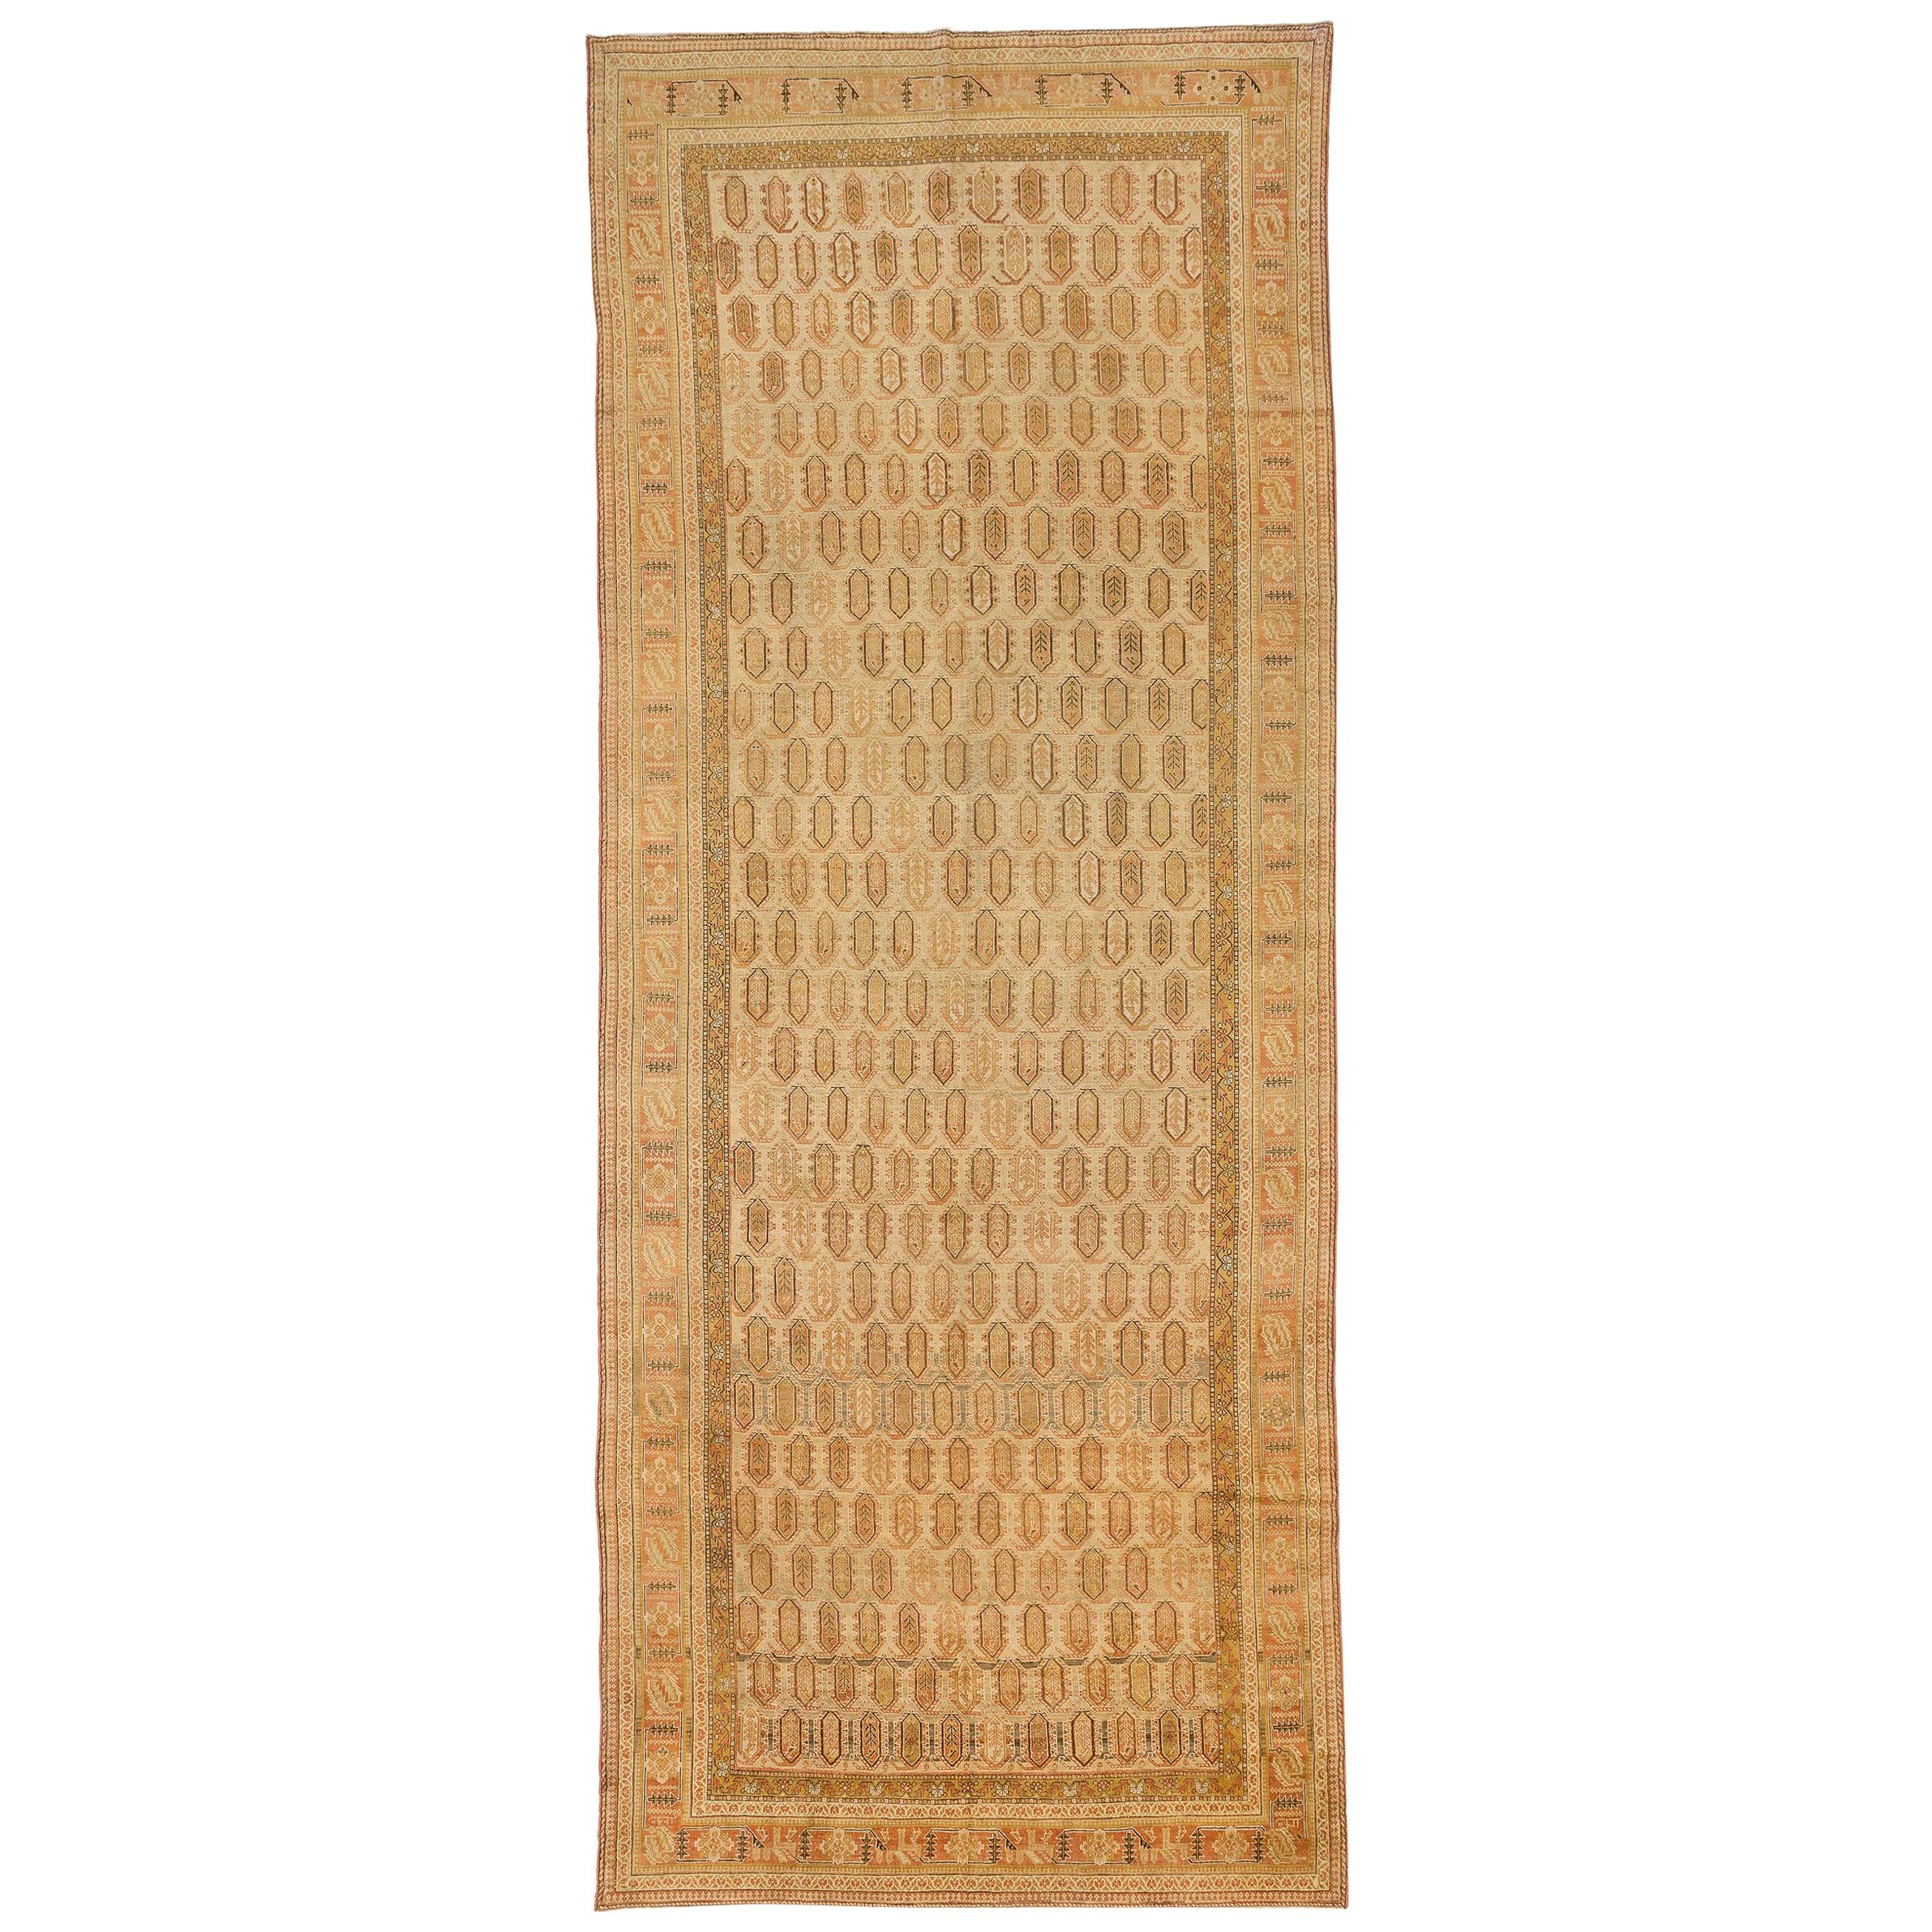 Grand tapis persan antique Shiraz avec des détails géométriques marron & orange sur toute la surface